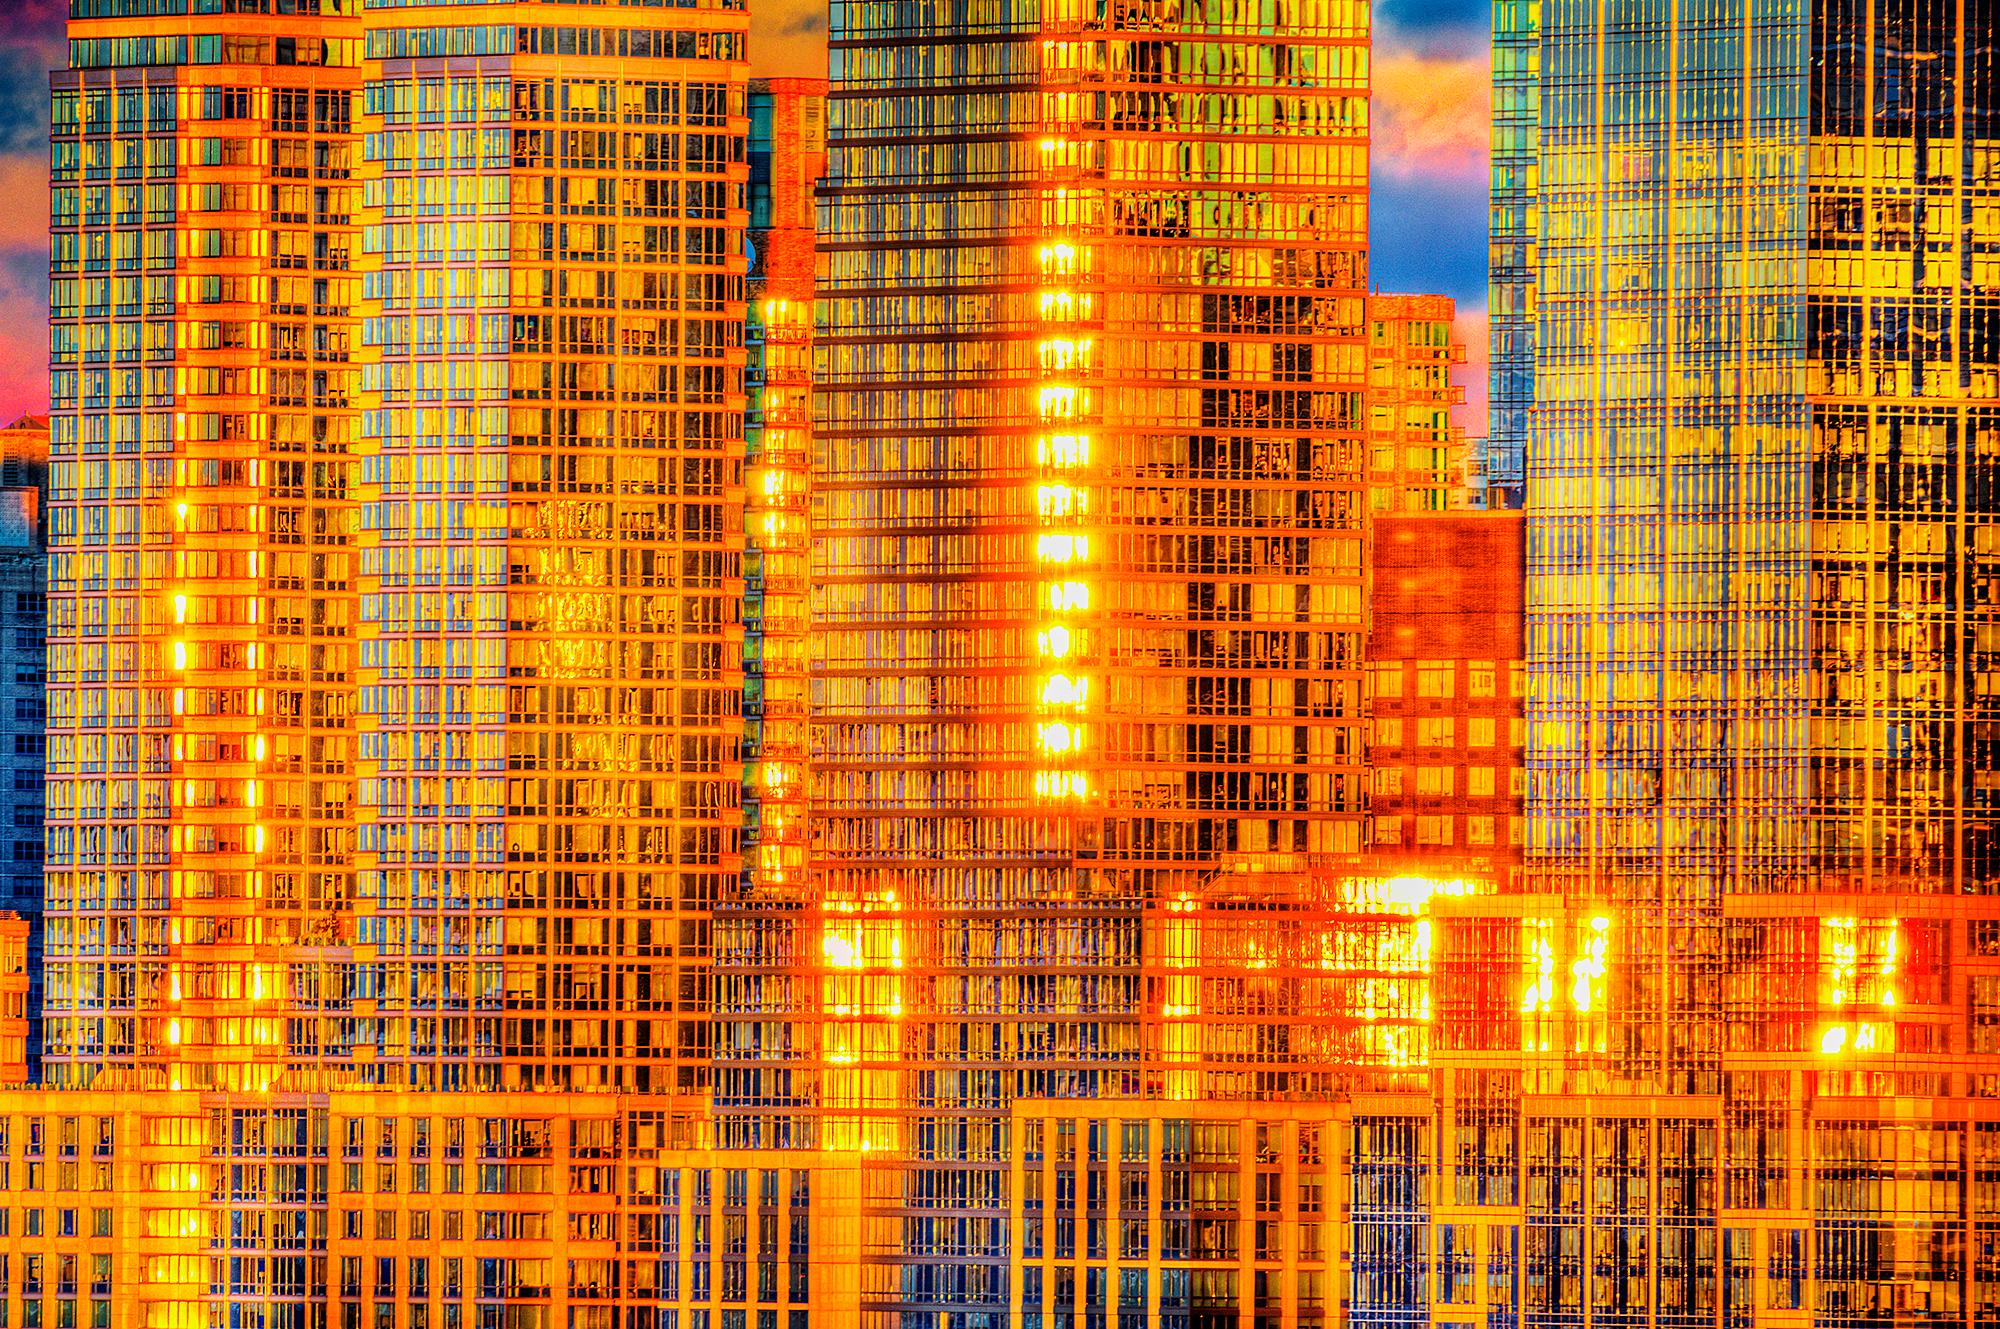 Abstract Photograph Mitchell Funk - Reflections dorées au-dessus des gratte-ciel de Manhattan